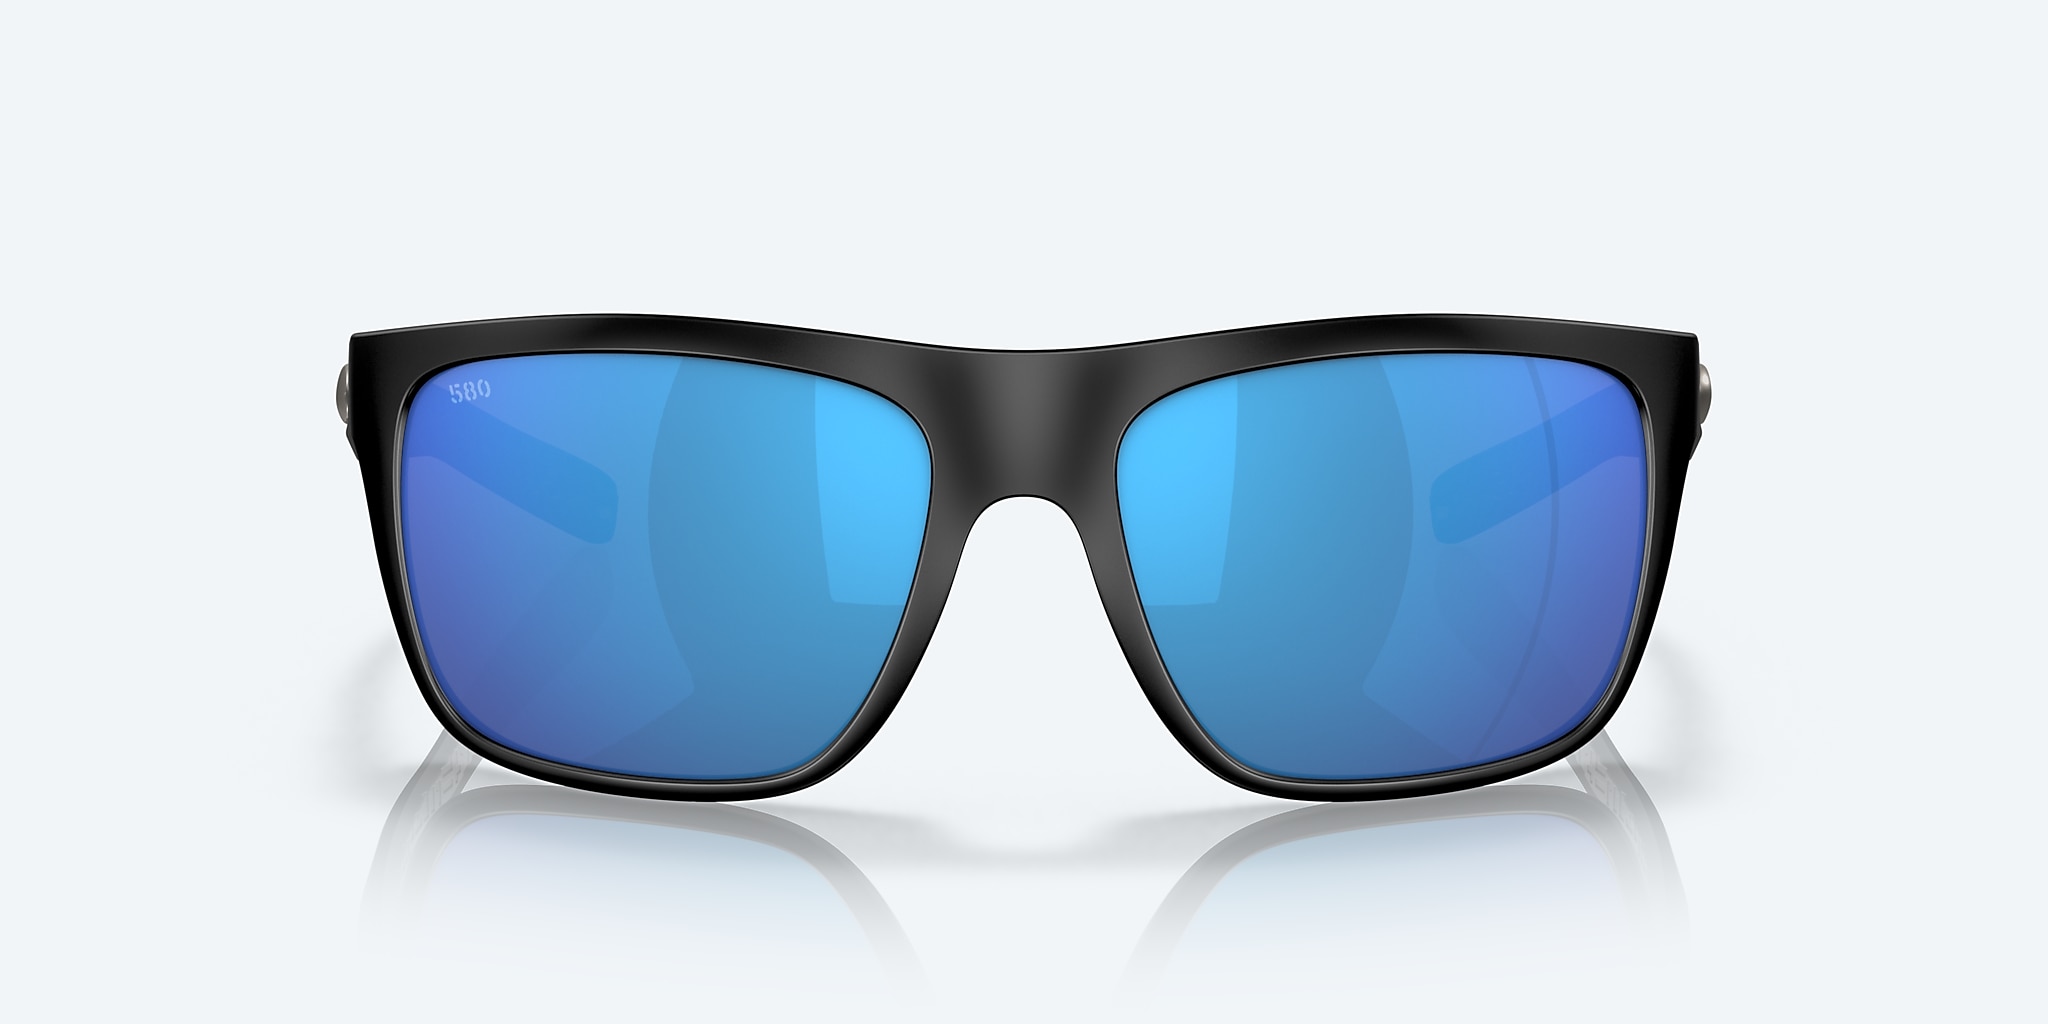 Costa Del Mar Broadbill Sunglasses - Matte Black/Blue Mirror 580G